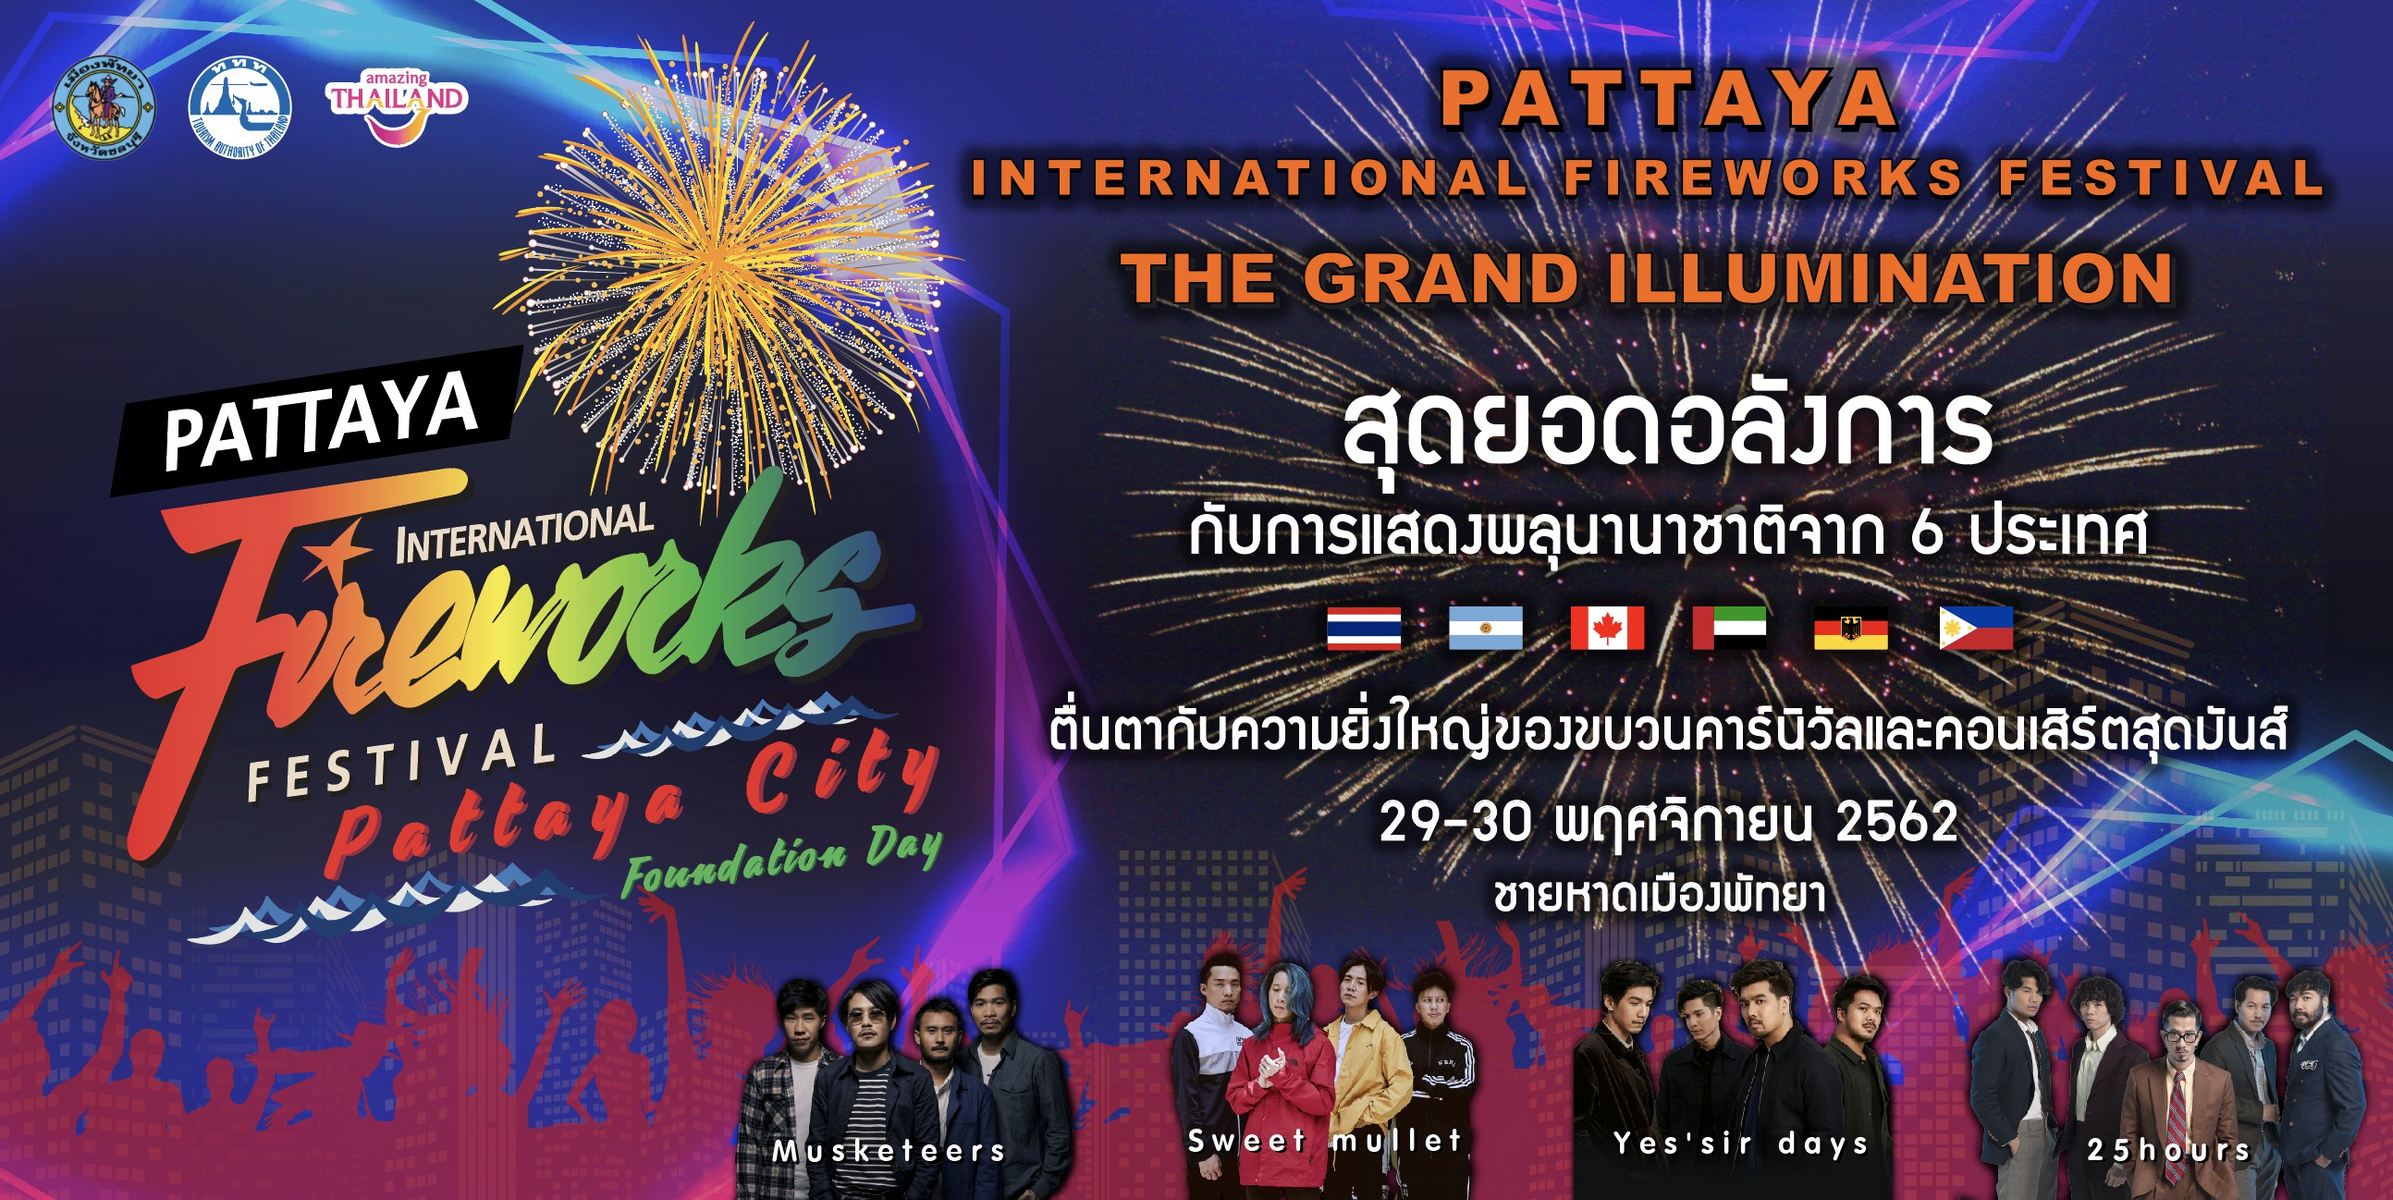 งานเทศกาลพลุนานาชาติเมืองพัทยา (Pattaya International Fireworks Festival)